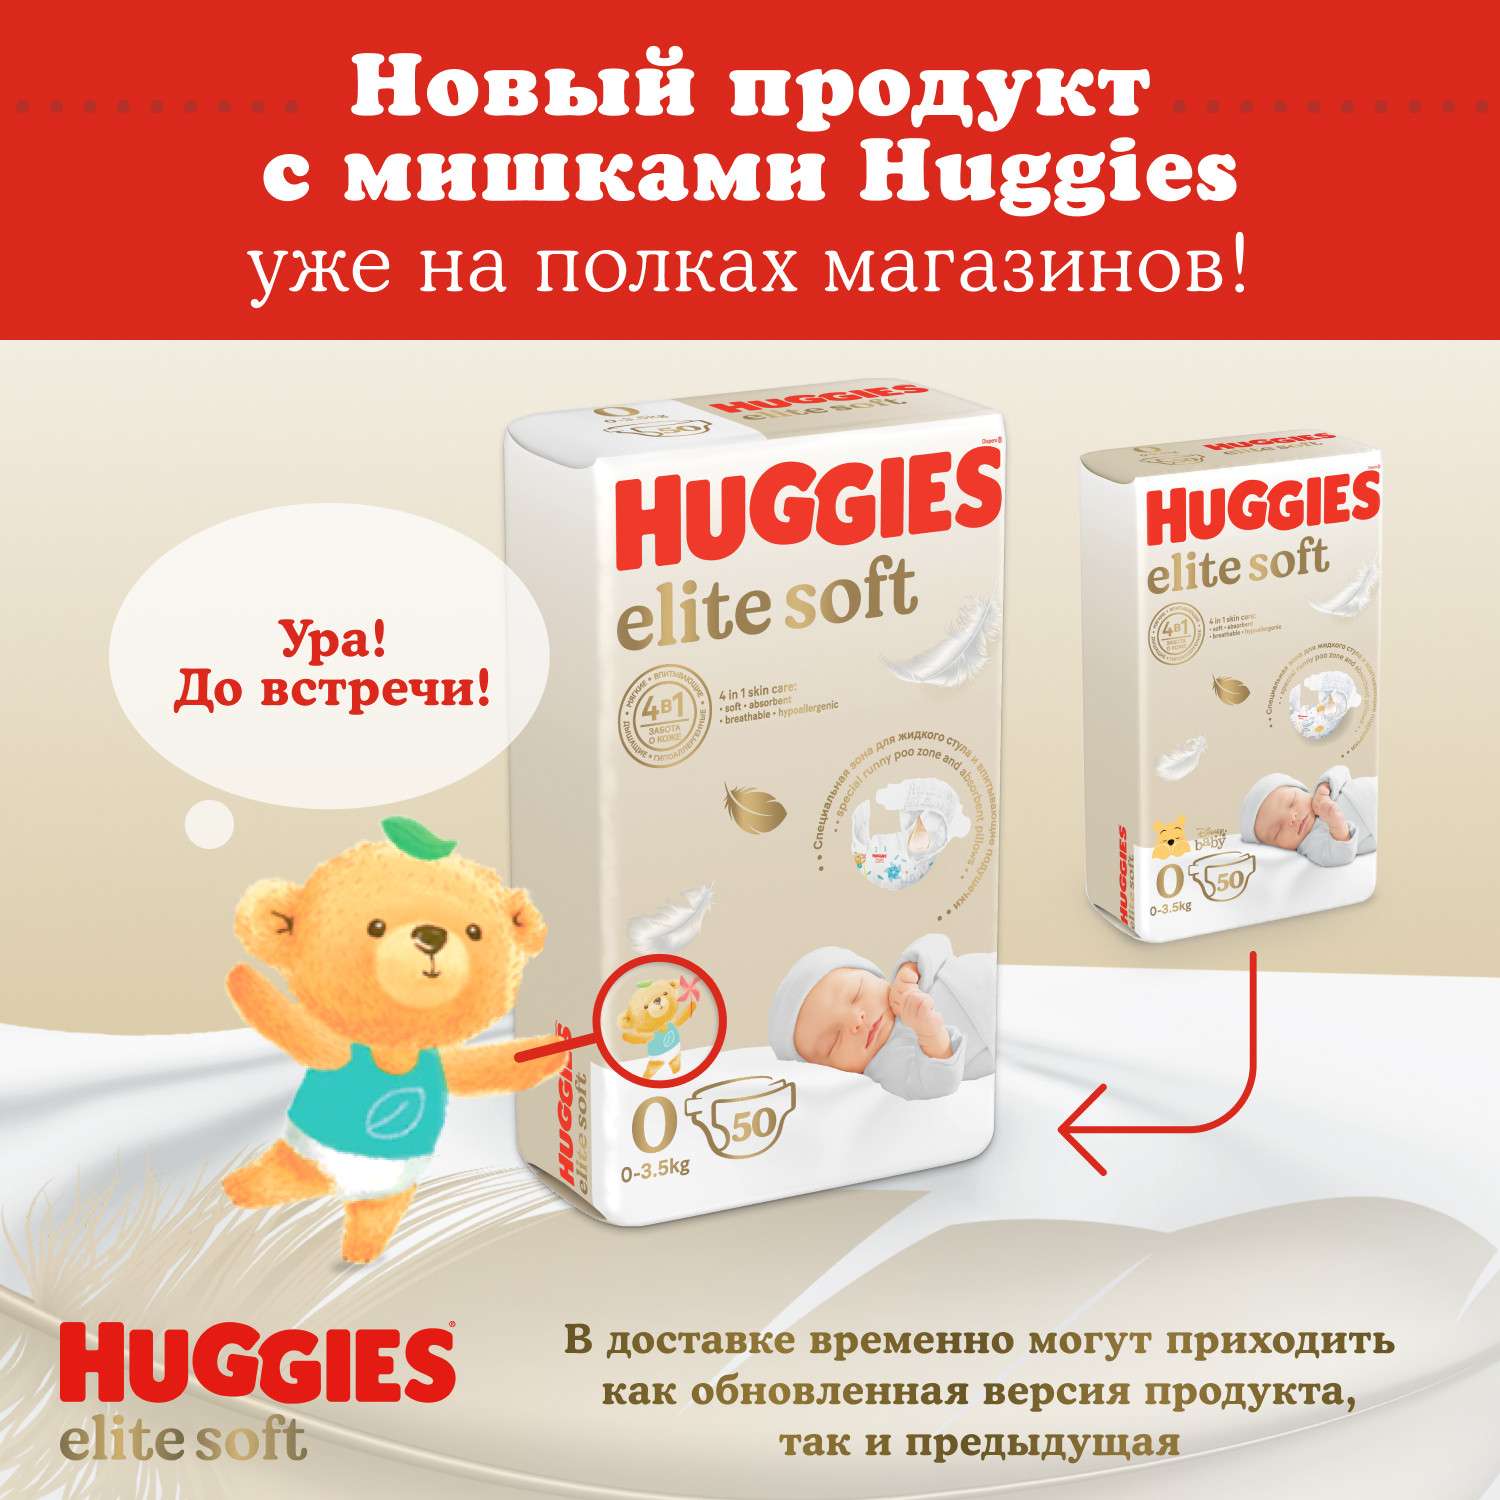 Подгузники Huggies Elite Soft для новорожденных 1 3-5кг 84шт - фото 3